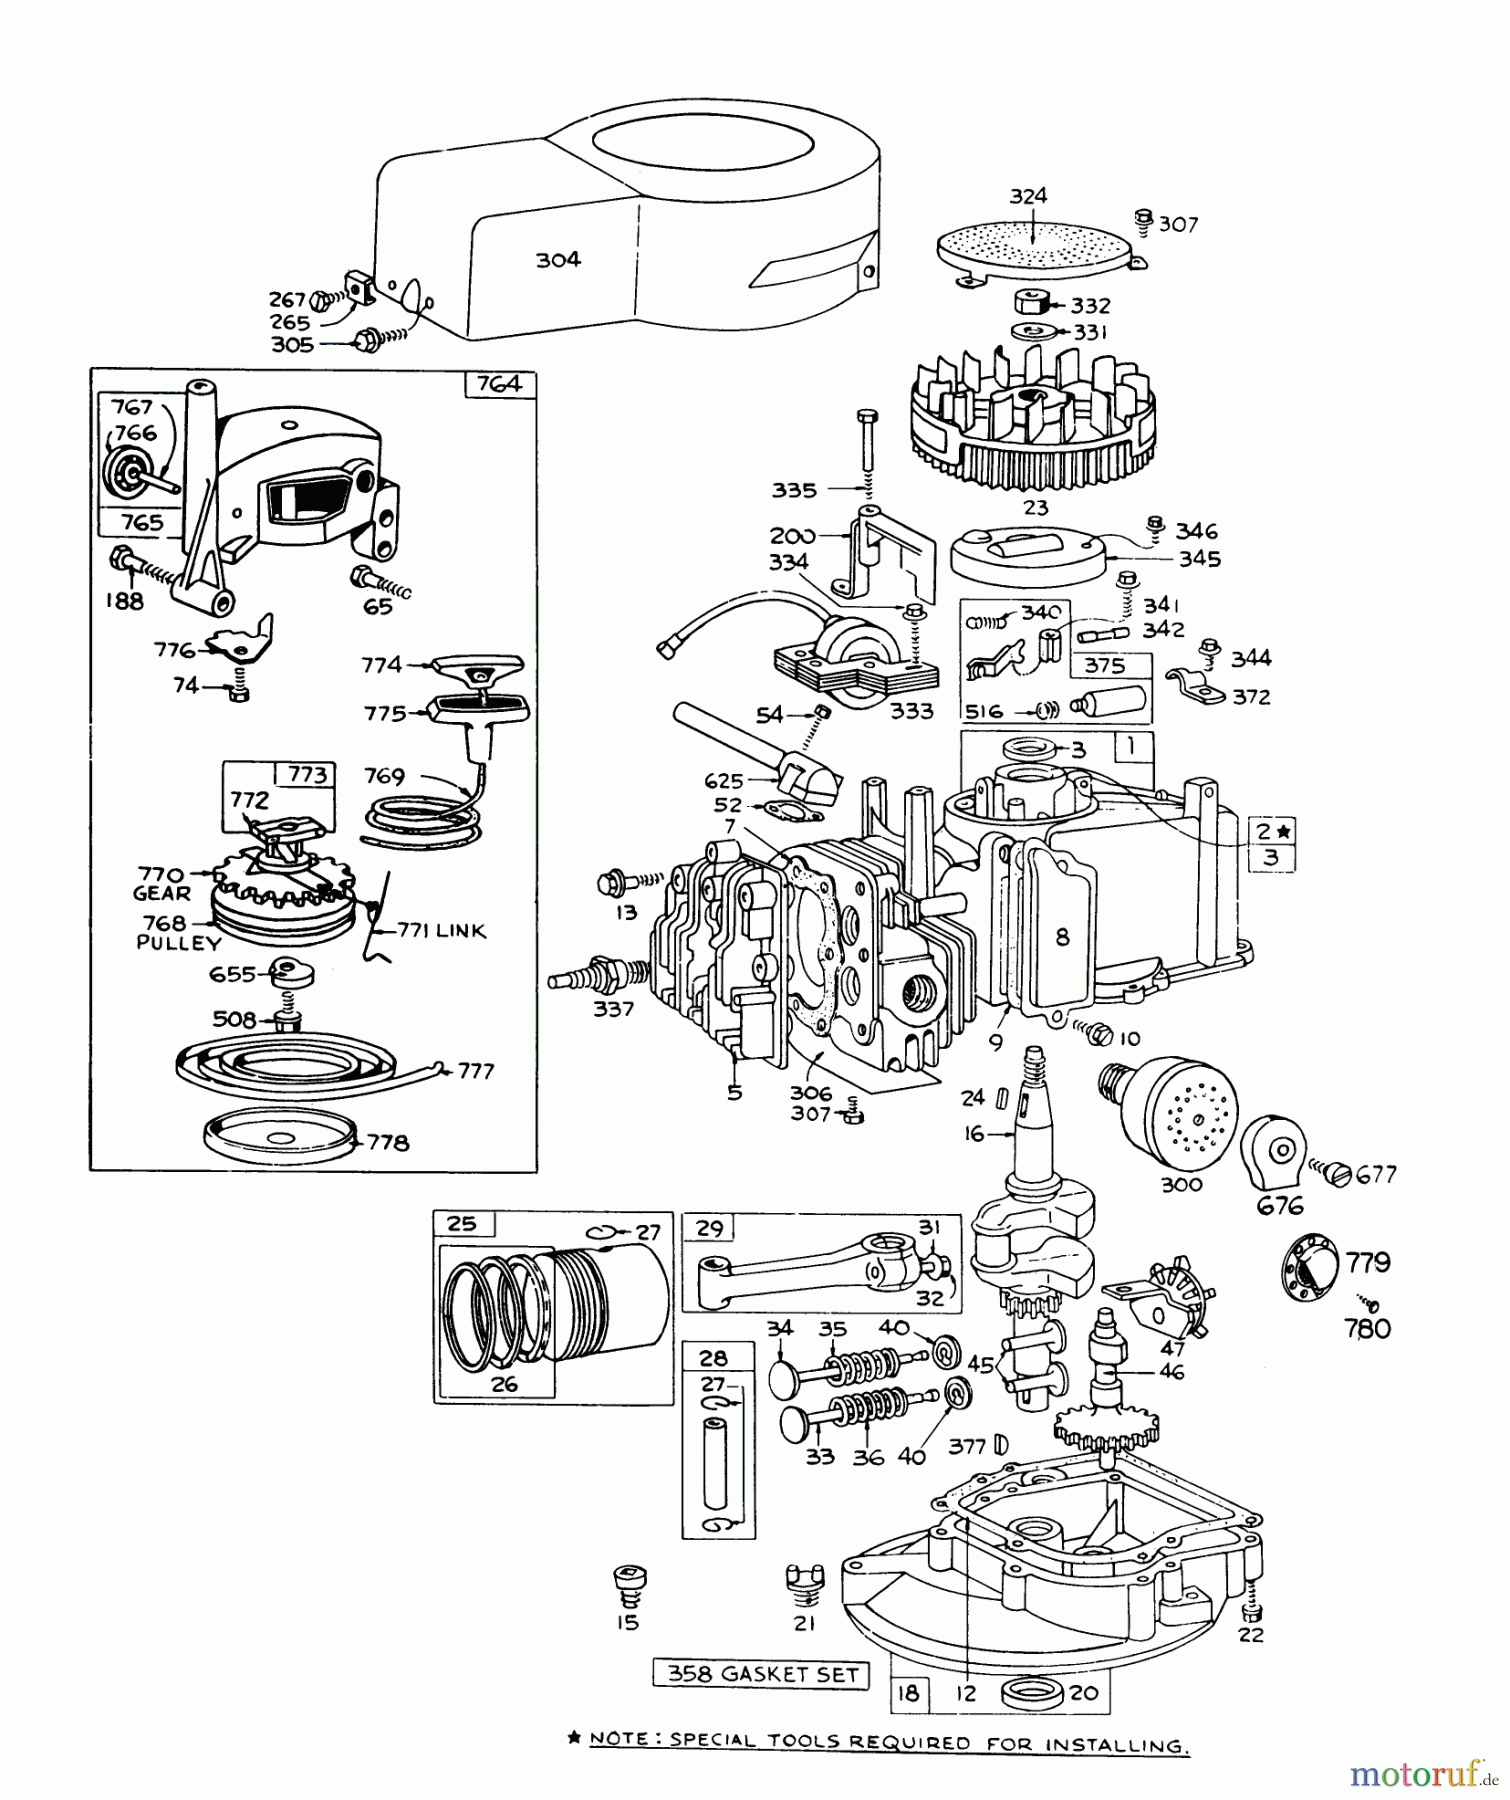  Toro Neu Mowers, Walk-Behind Seite 1 16287 - Toro Whirlwind II Lawnmower, 1978 (8000001-8999999) ENGINE BRIGGS & STRATTON MODEL 92508-0985-01 FOR 19